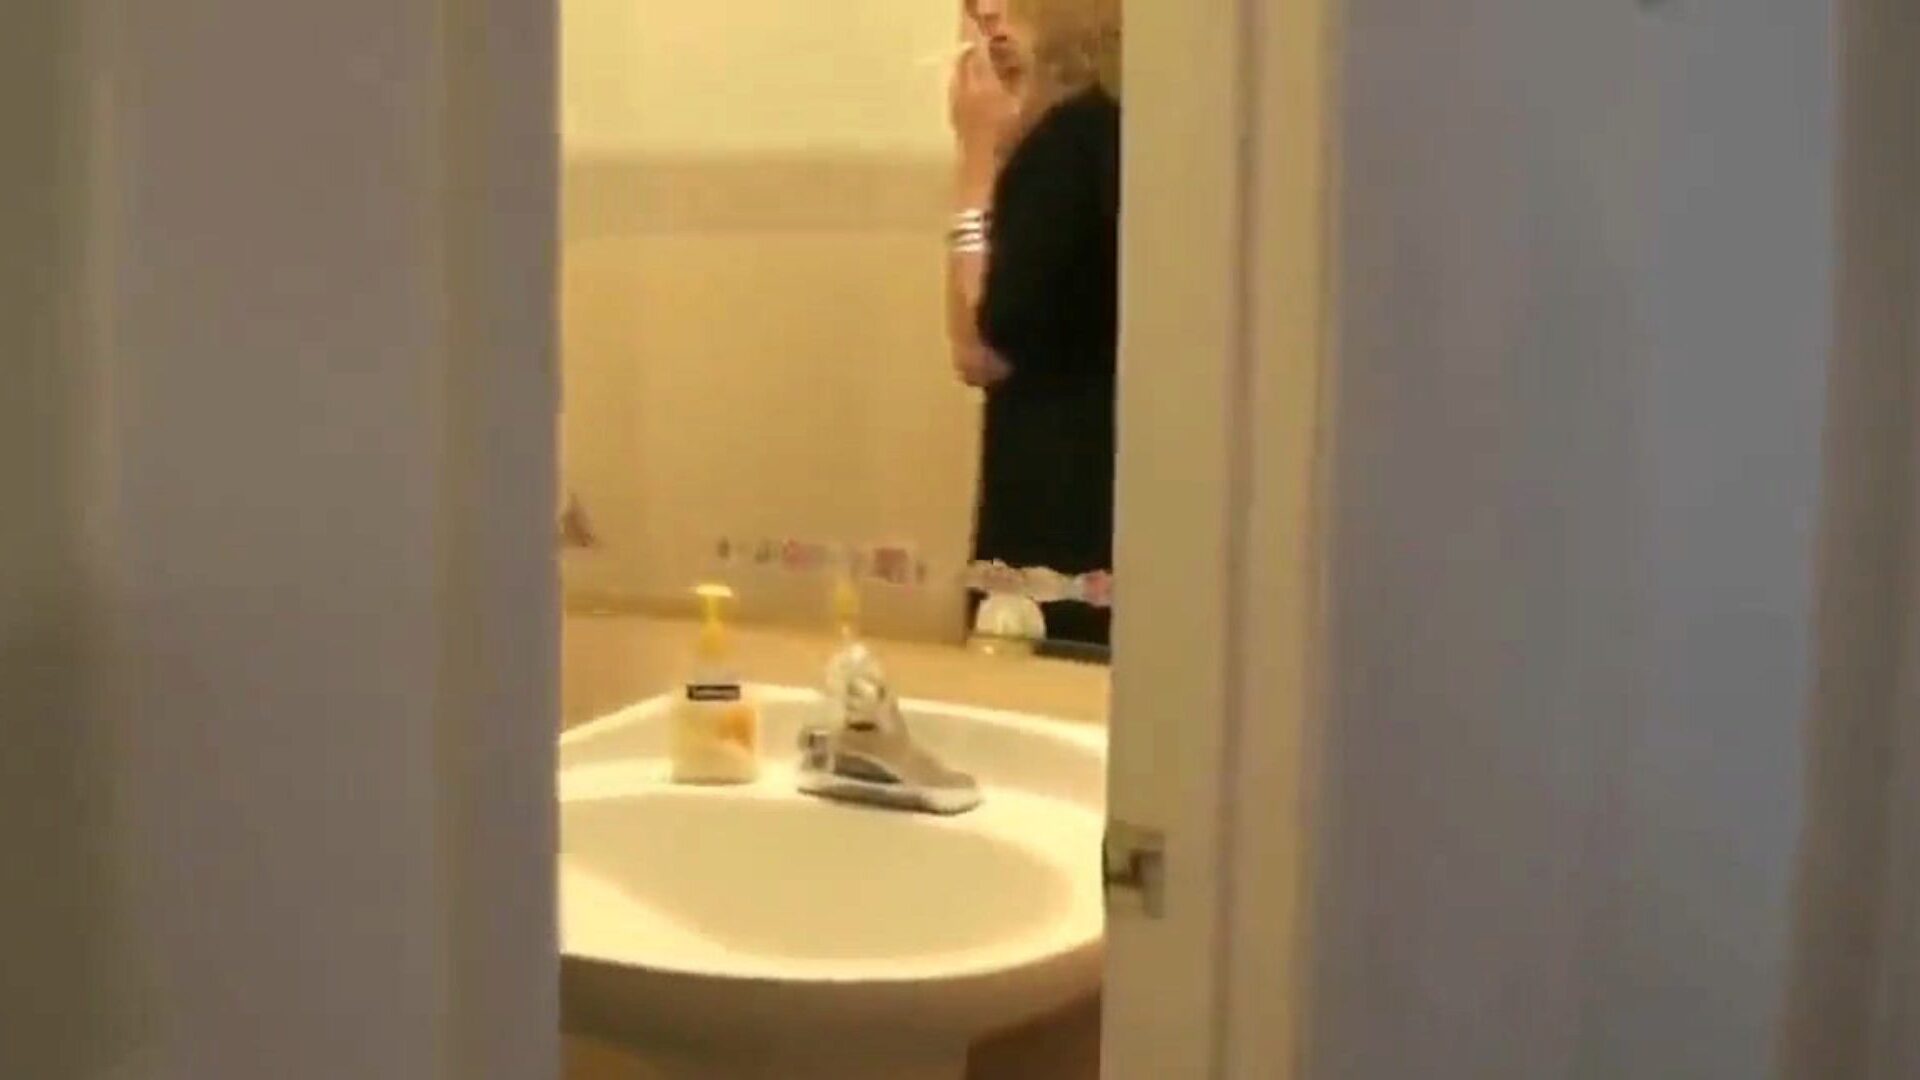 rokende moeder betrapt zoon die haar bespioneert in de badkamer ... kijk hoe rokende moeder haar betrapt terwijl ze haar bespioneert in de badkamer rollenspel aflevering op xhamster - de ultieme schare van gratis xxx moeder gratis en gratis mobiele moeder hd porno tube clips